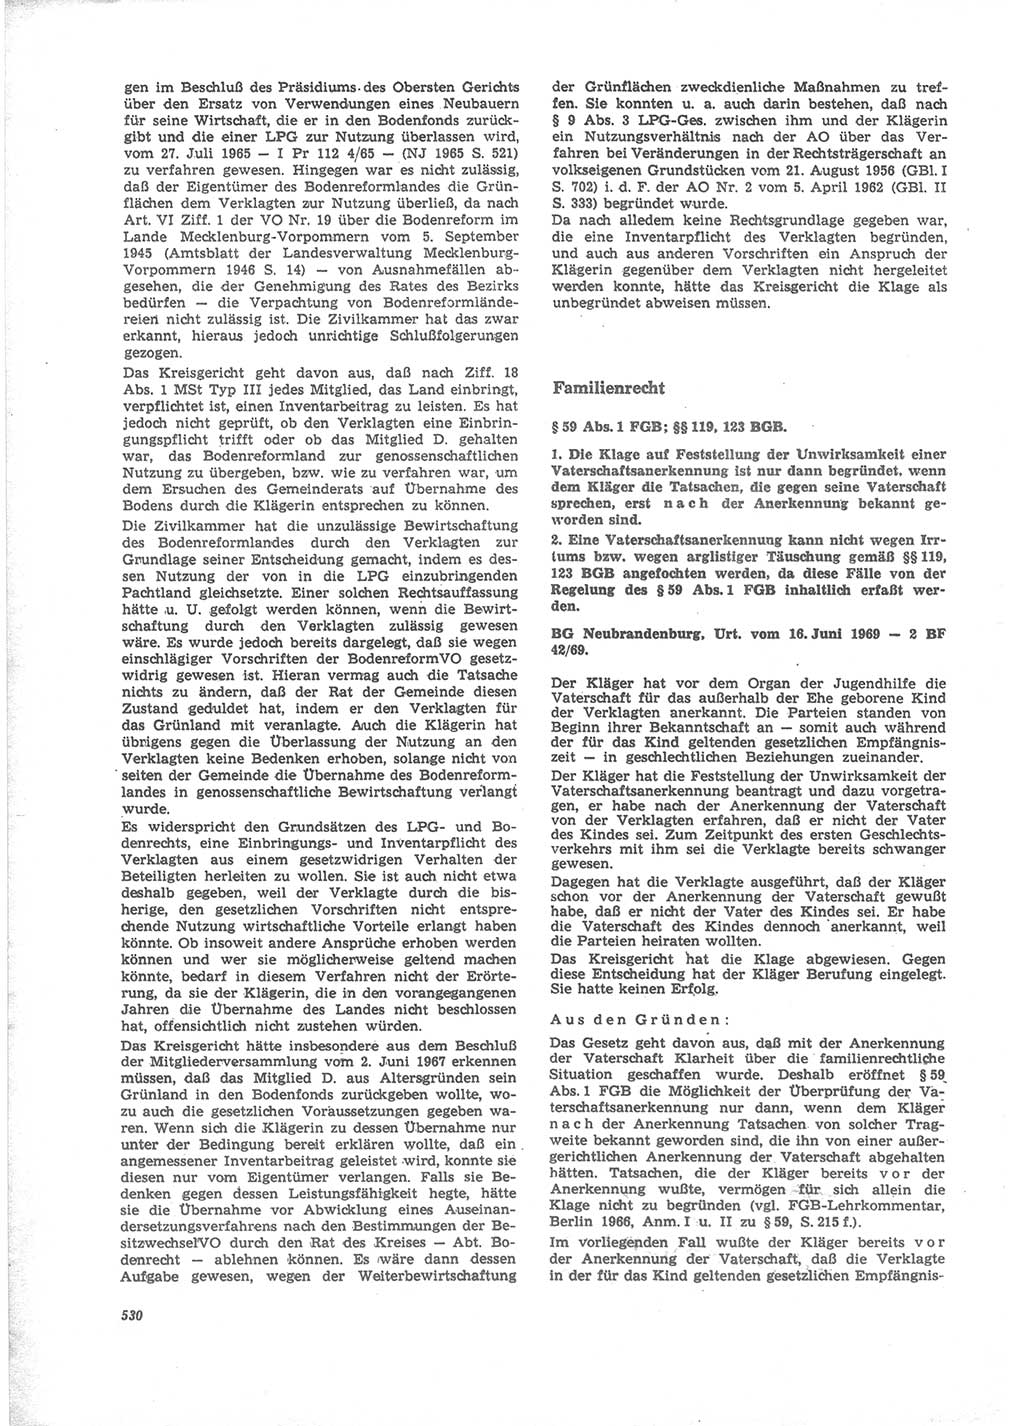 Neue Justiz (NJ), Zeitschrift für Recht und Rechtswissenschaft [Deutsche Demokratische Republik (DDR)], 24. Jahrgang 1970, Seite 530 (NJ DDR 1970, S. 530)